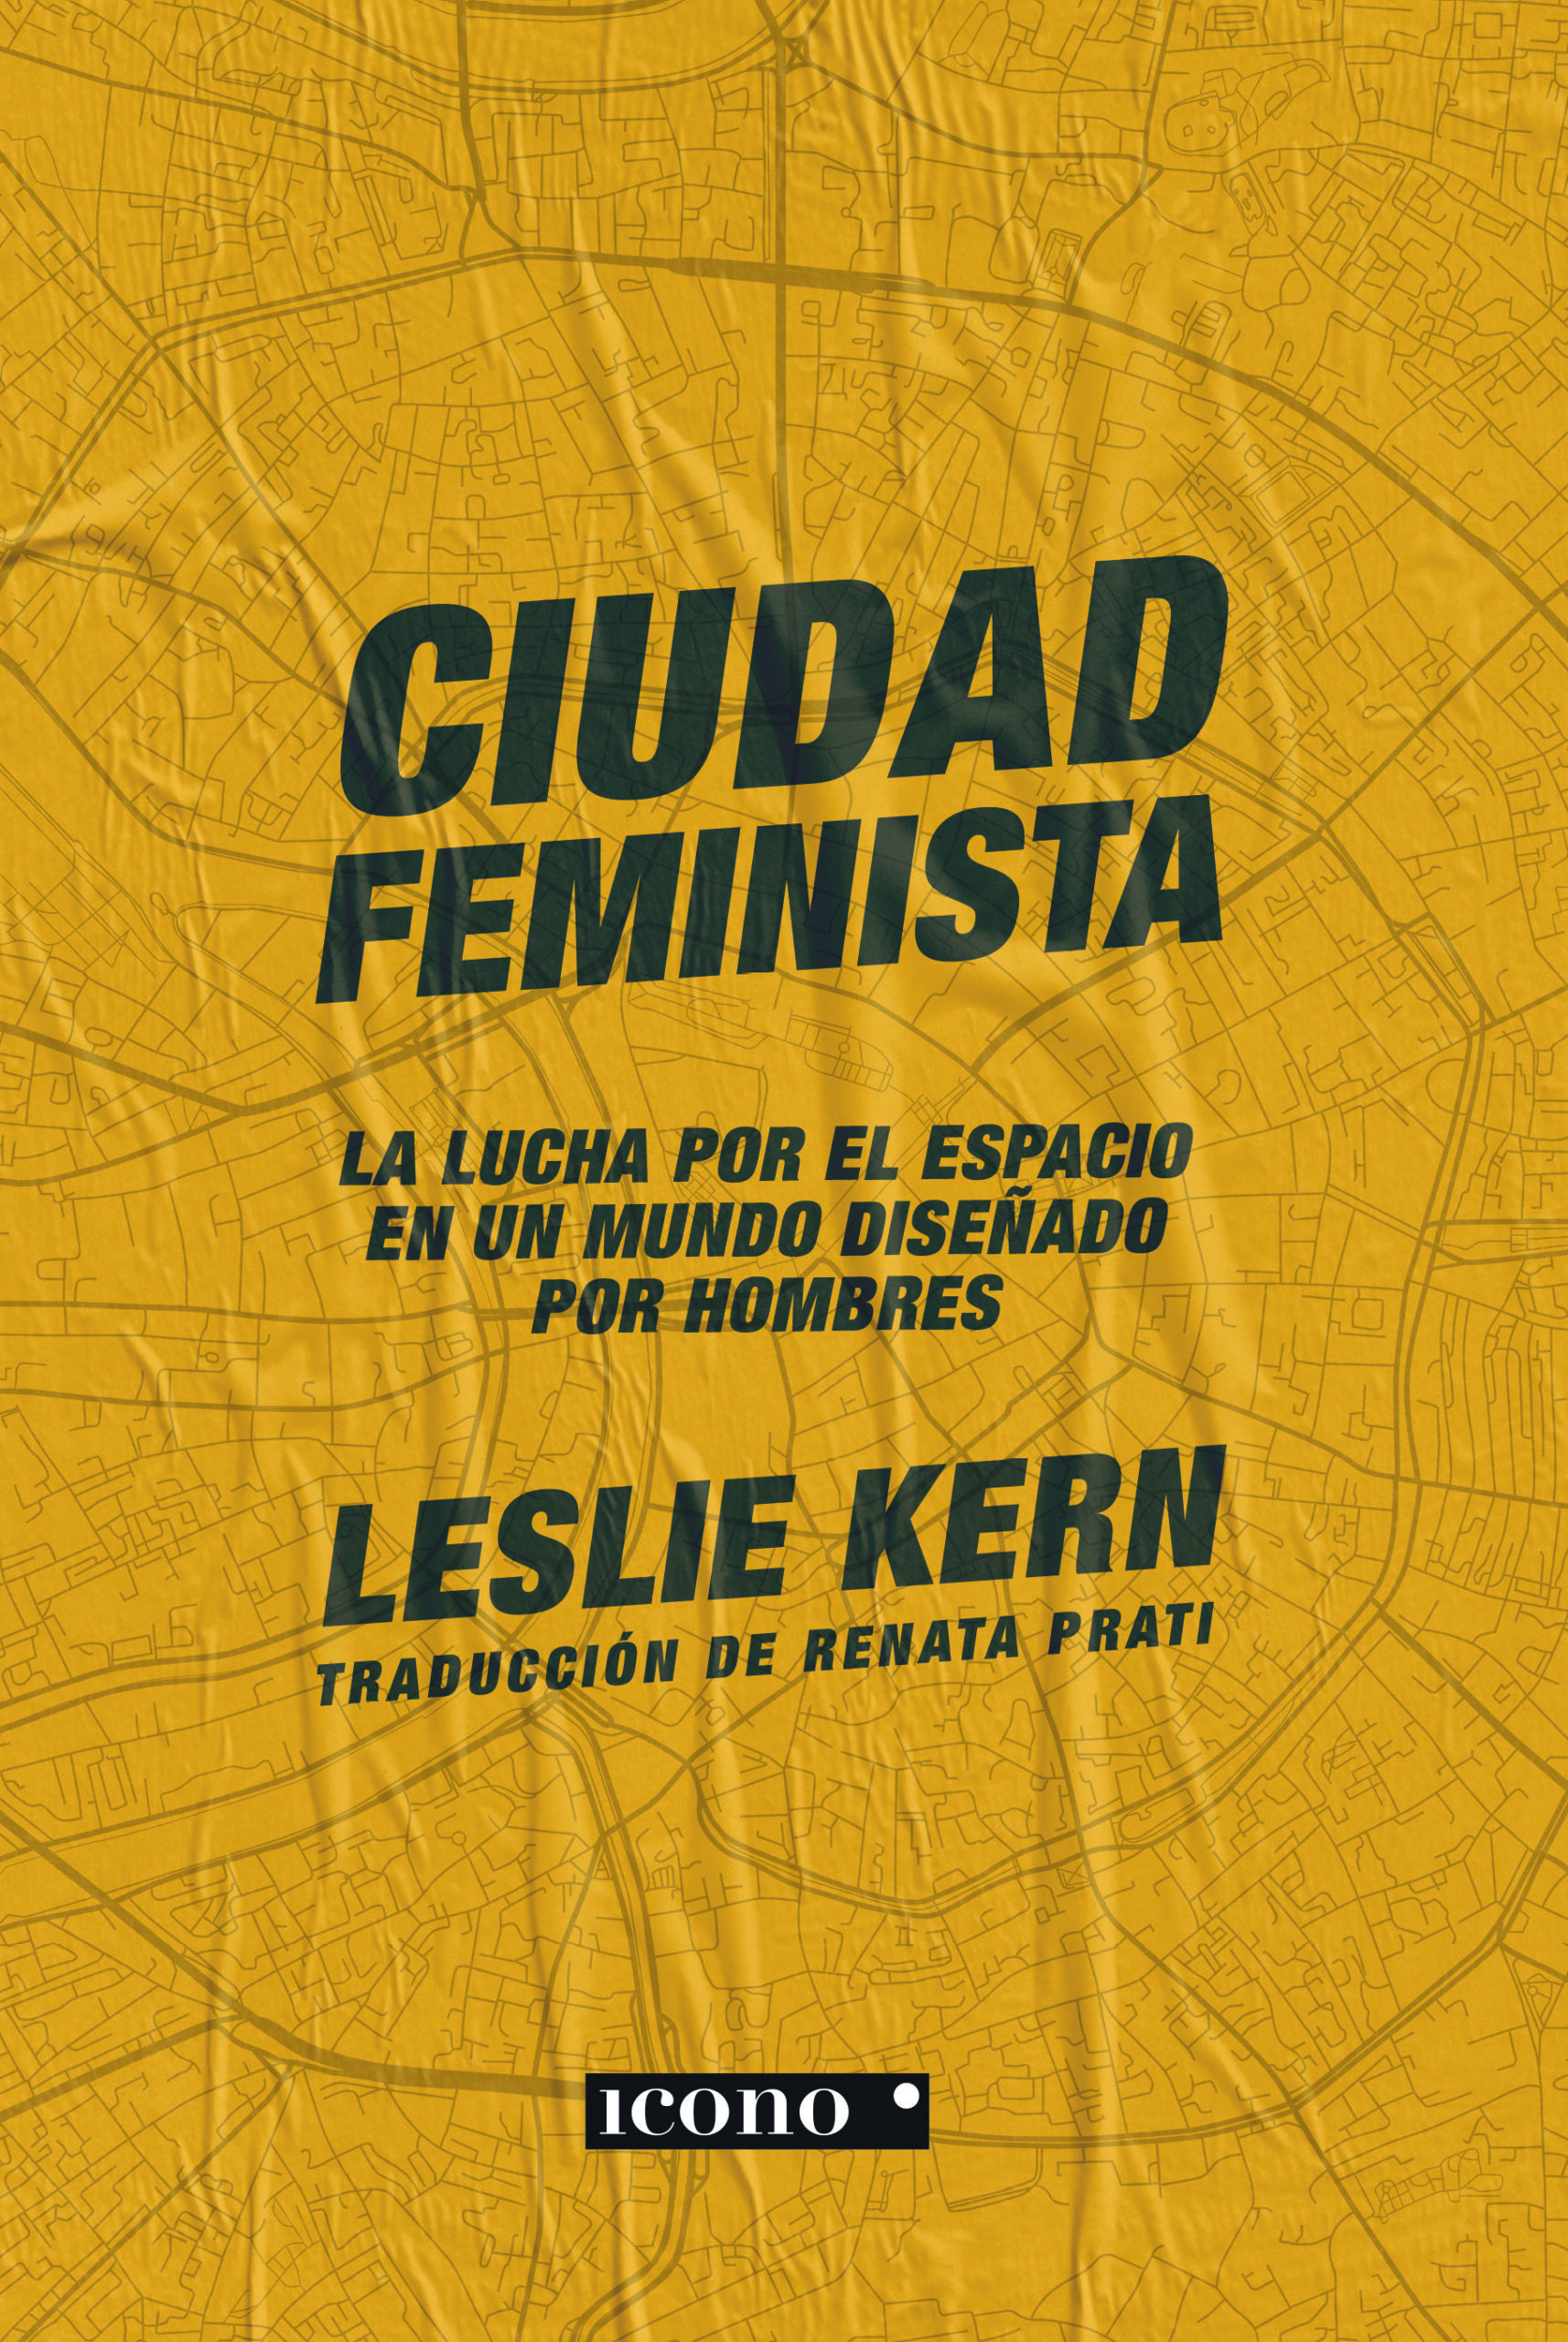 CIUDAD FEMINISTA – Icono Editorial